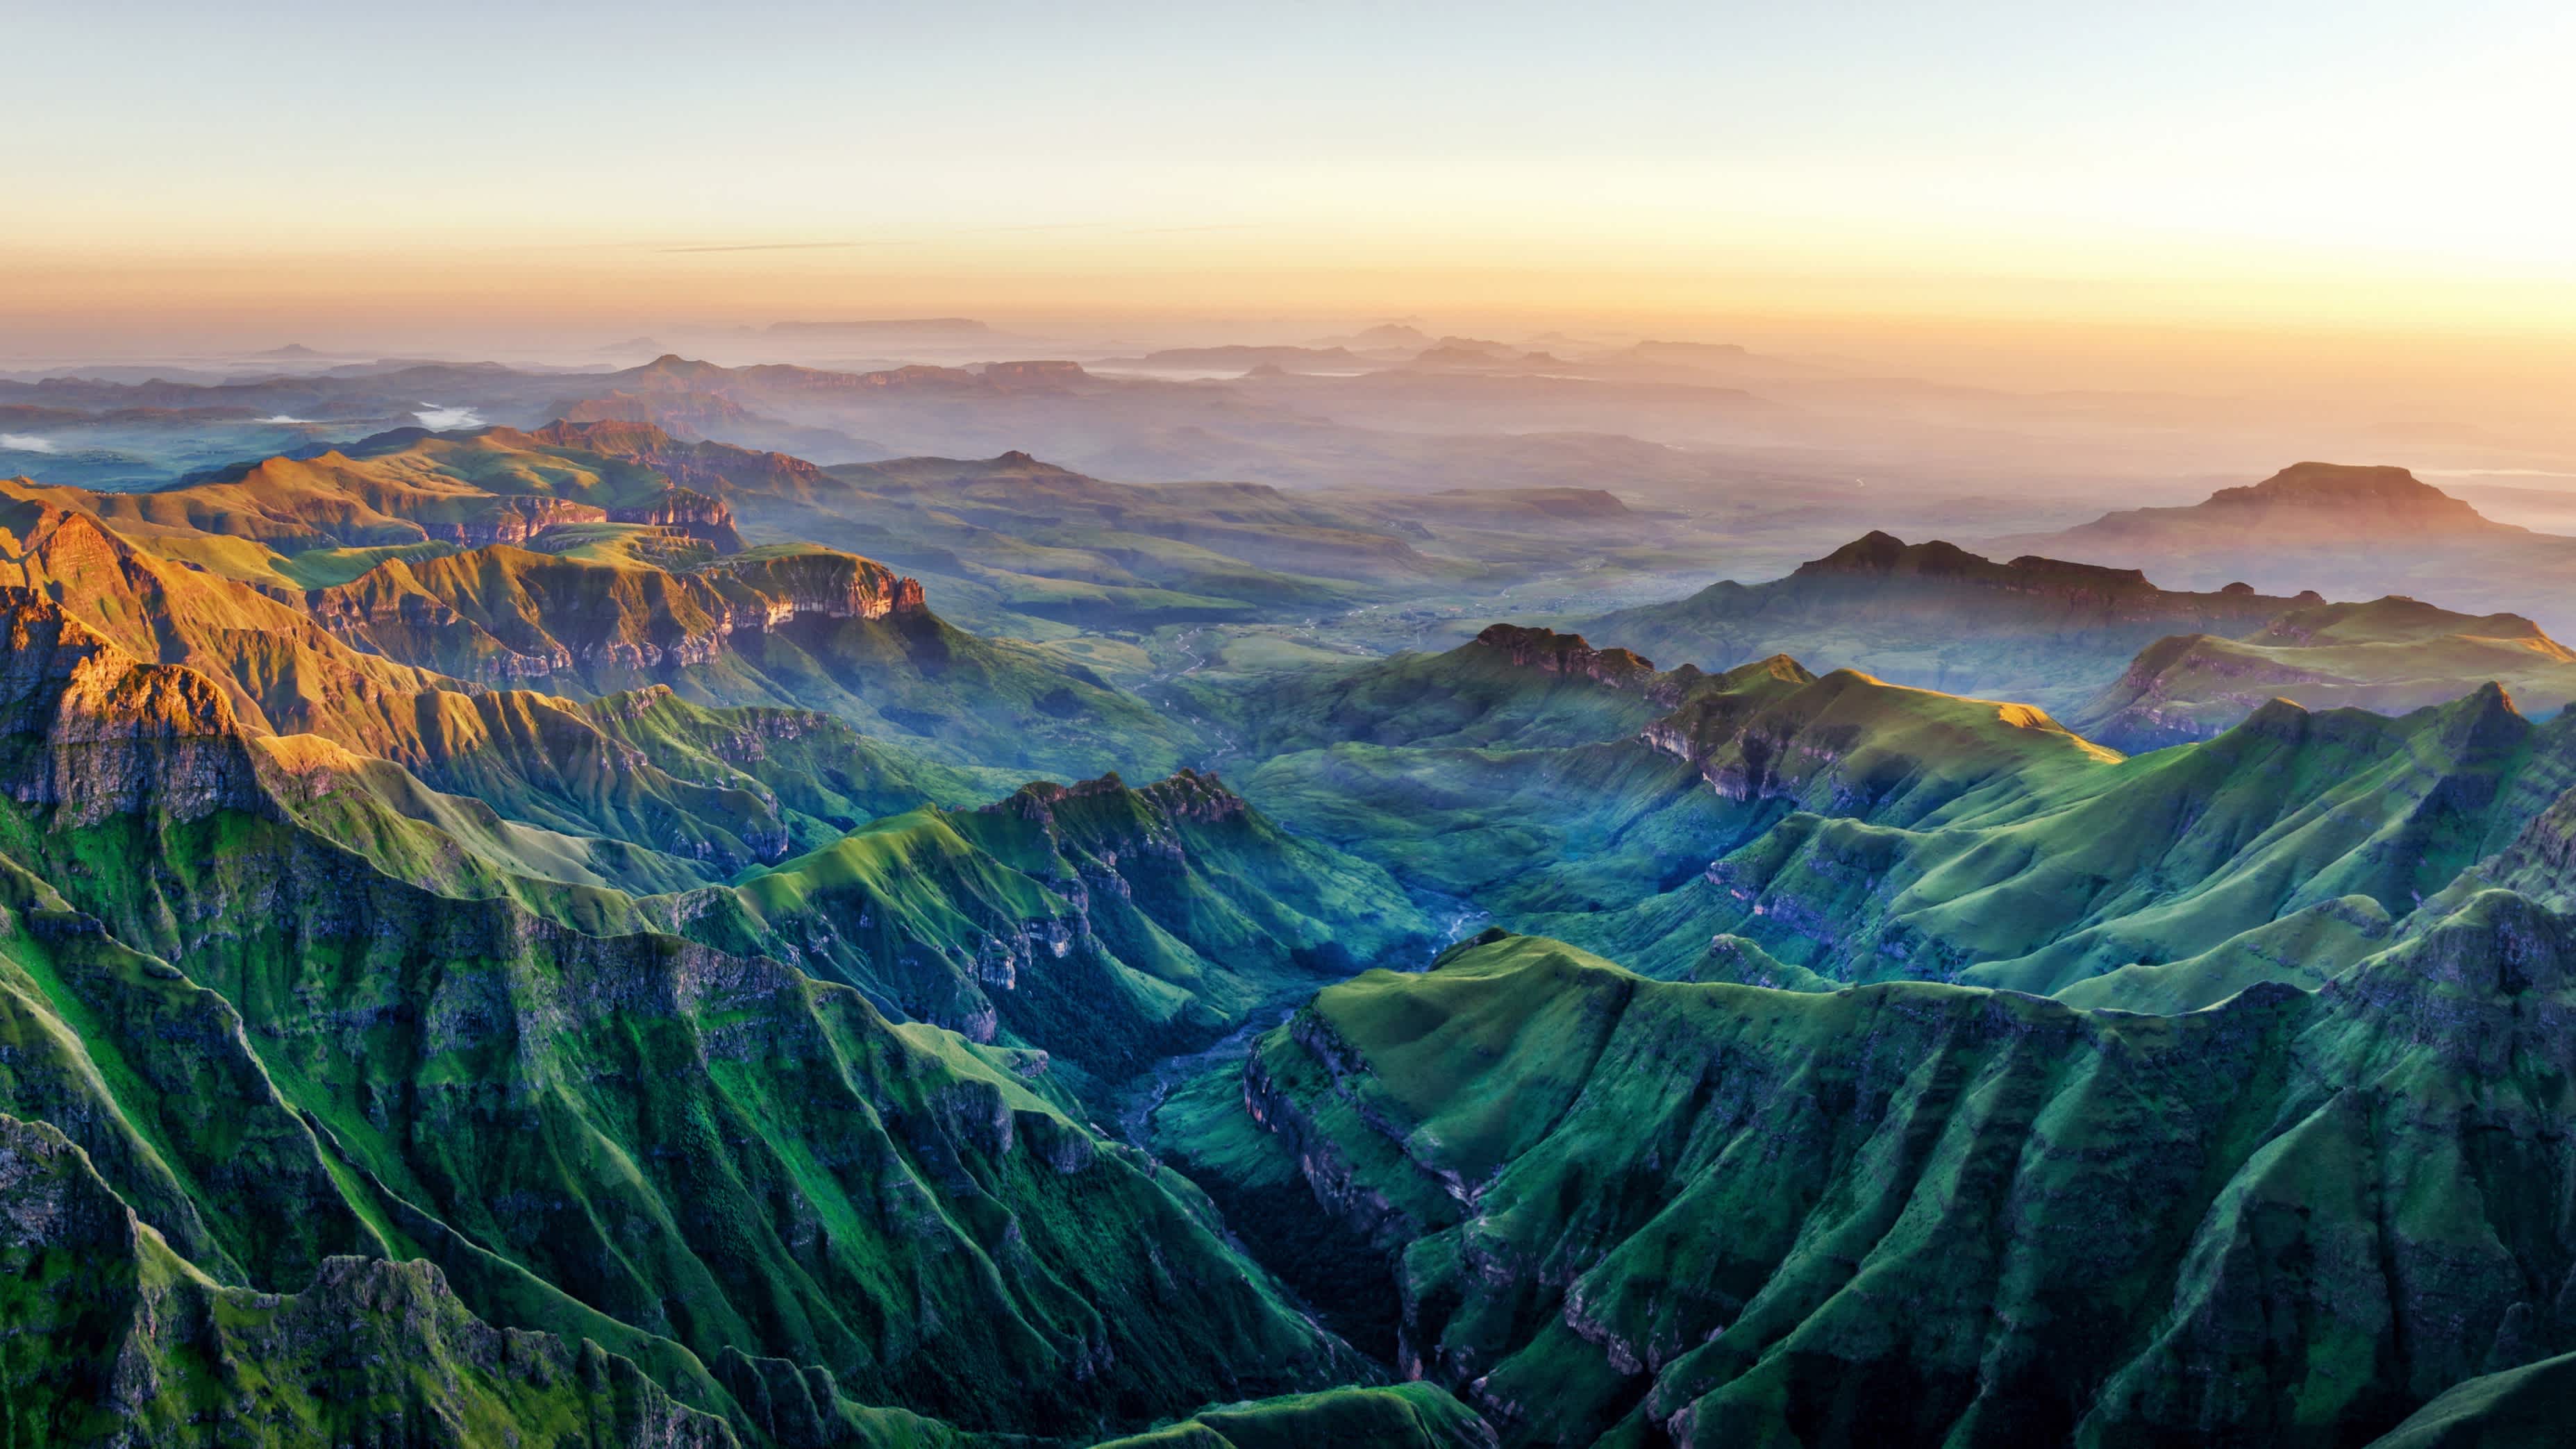 Découvrez l'impressionnante vallée de Drakensberg d'Afrique du Sud pendant votre voyage en Afrique australe.